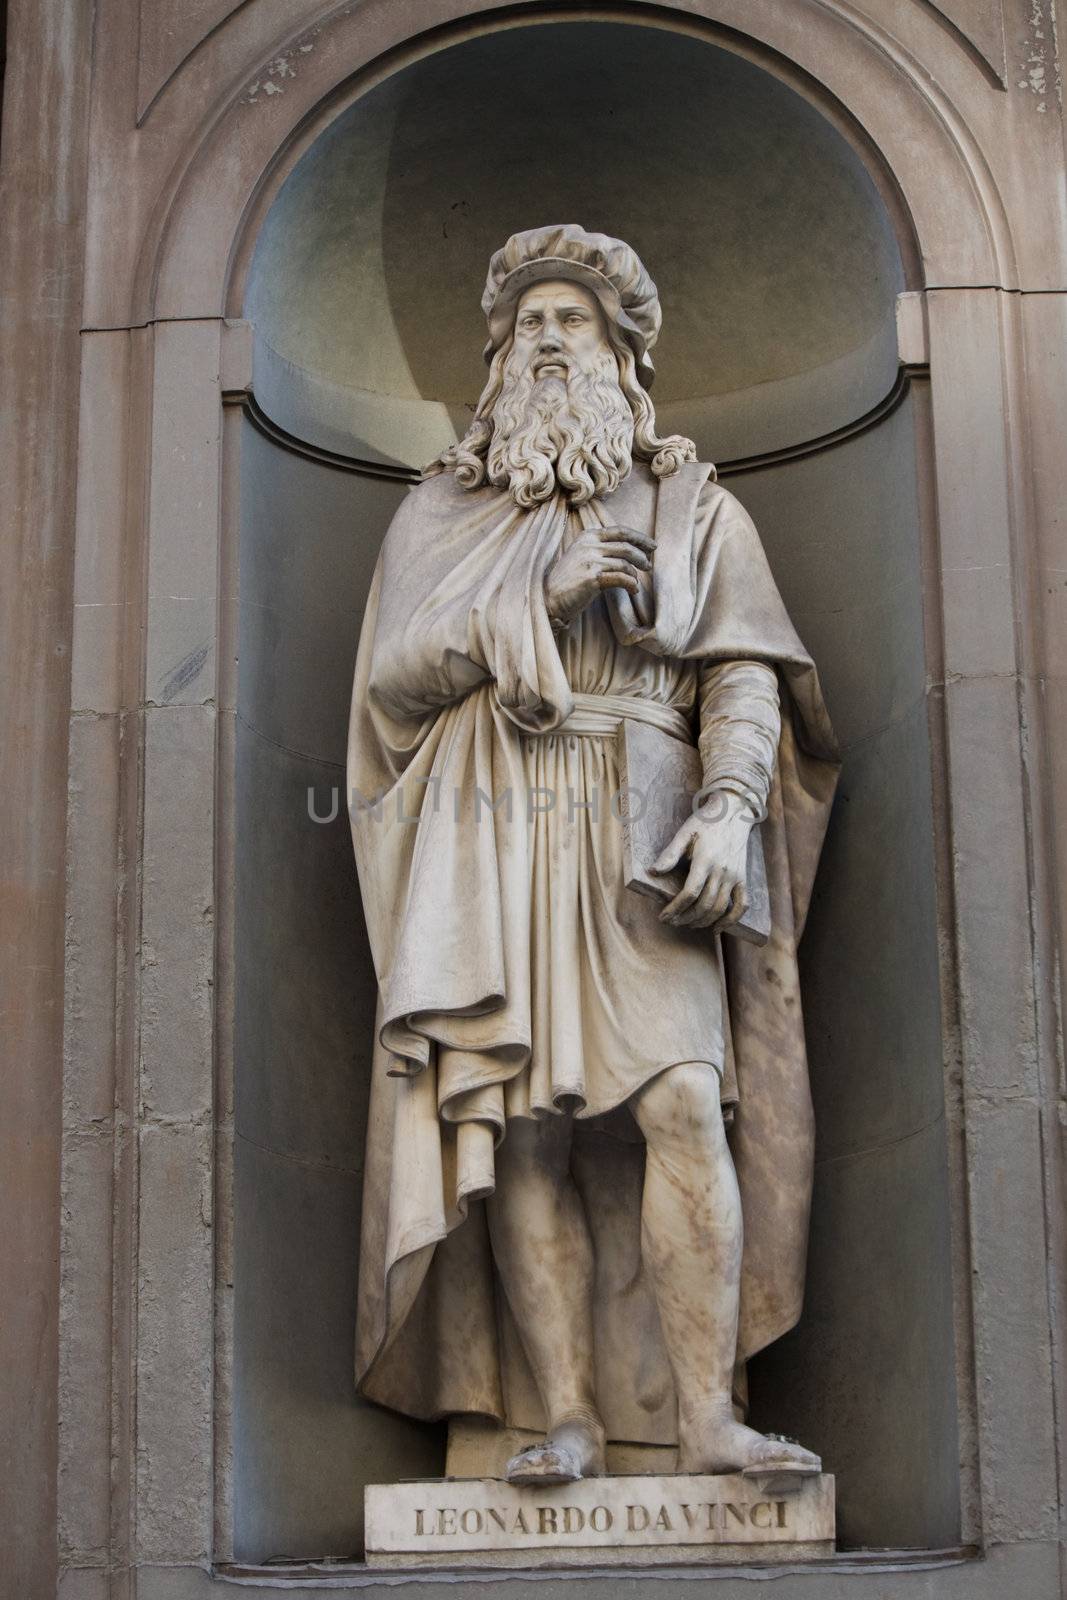 Statue of Leonardo da Vinci in Uffizi Gallery Florence Italy 